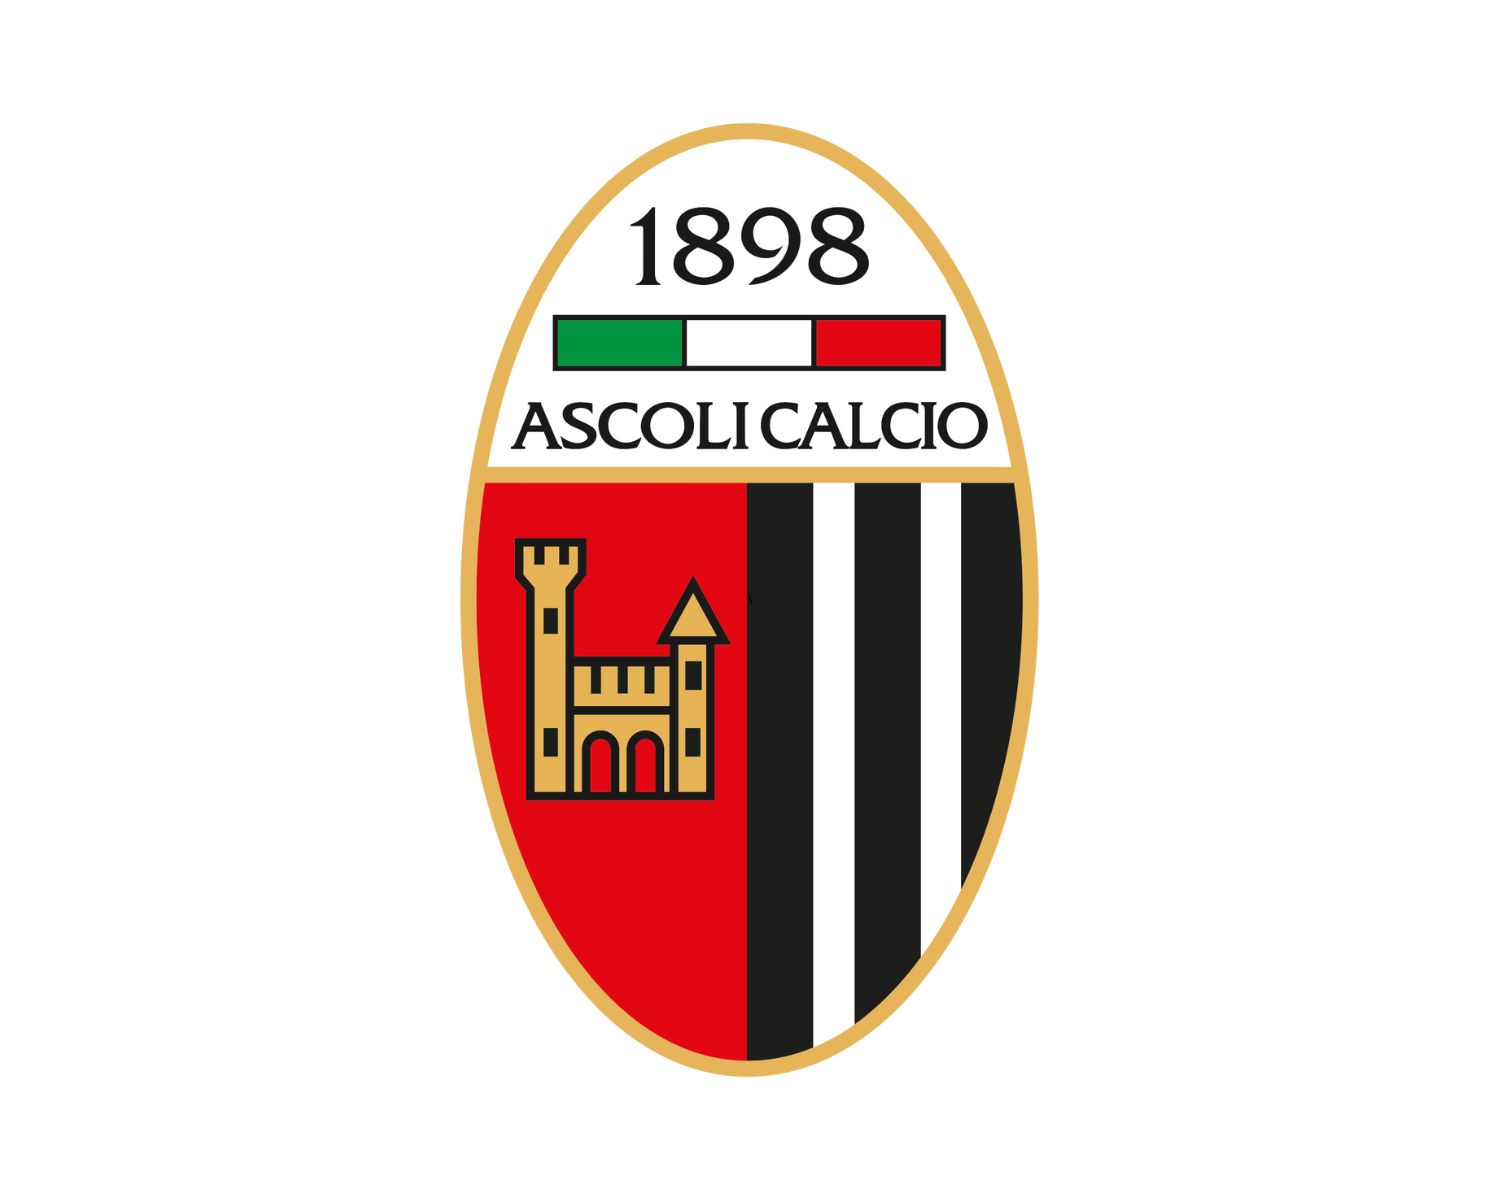 ascoli-picchio-fc-1898-21-football-club-facts